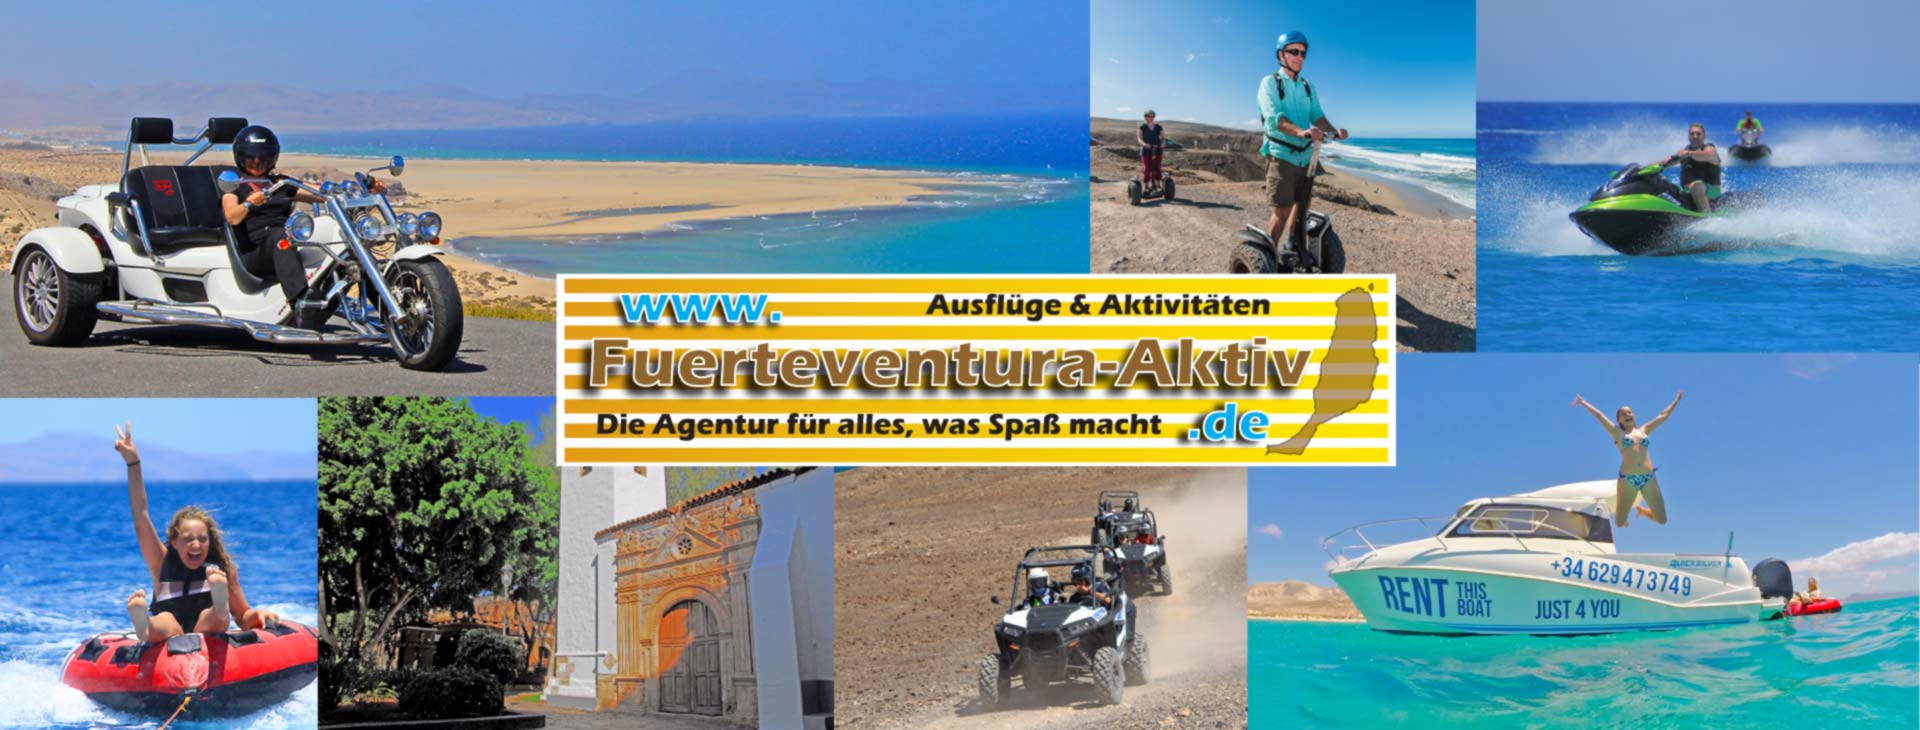 (c) Fuerteventura-aktiv.com